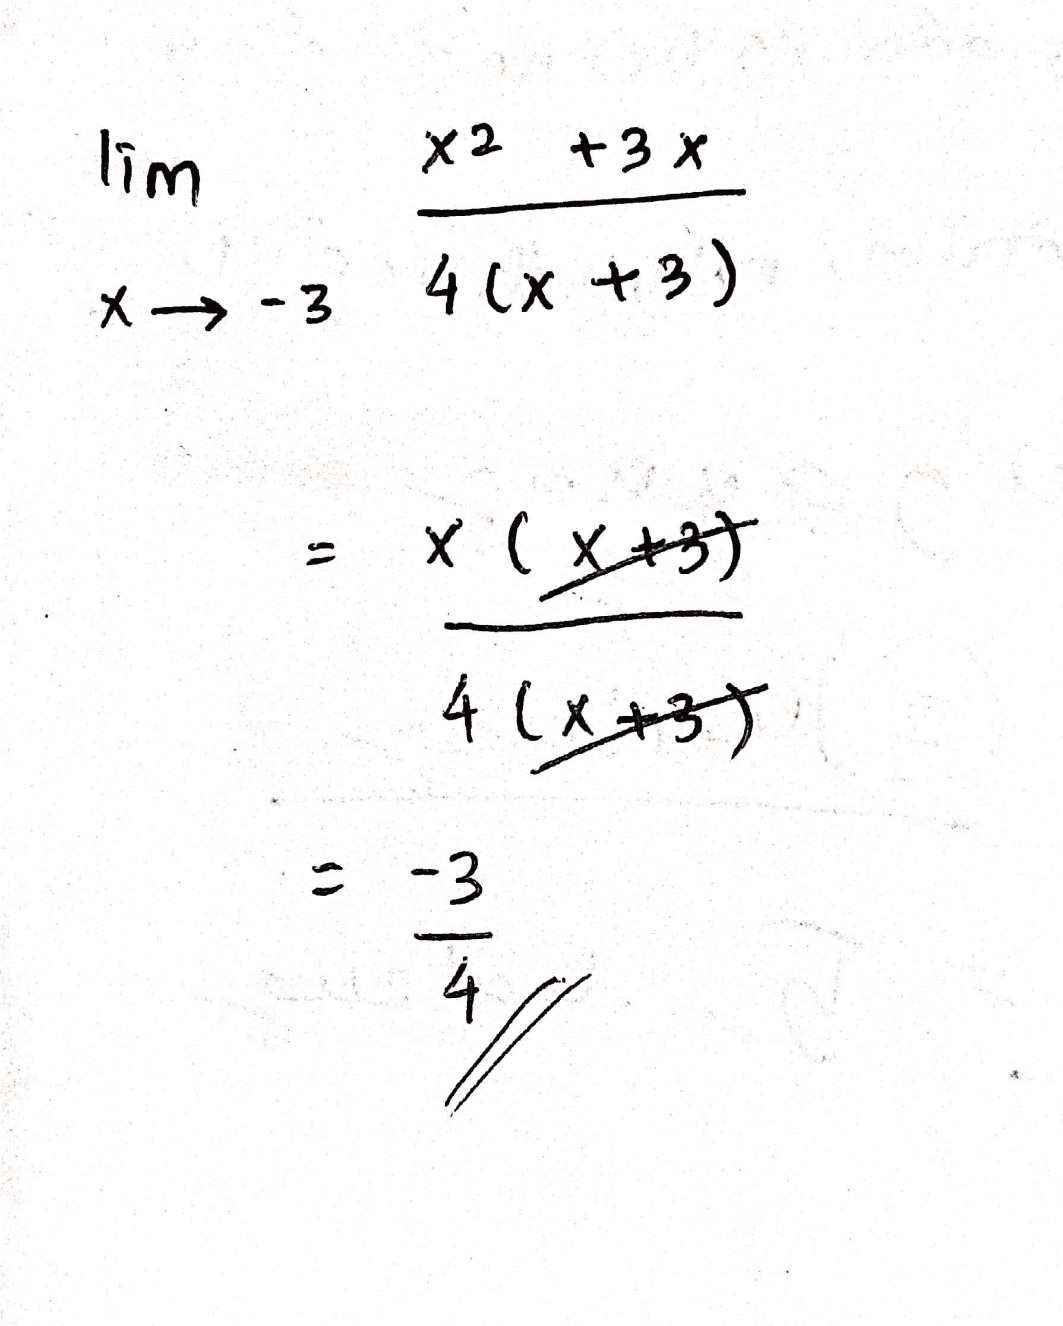 lim x2 +3 X 3X x →-3 4 (x+3) 19 X (x+3) 4 (x+3) ** -3 4 